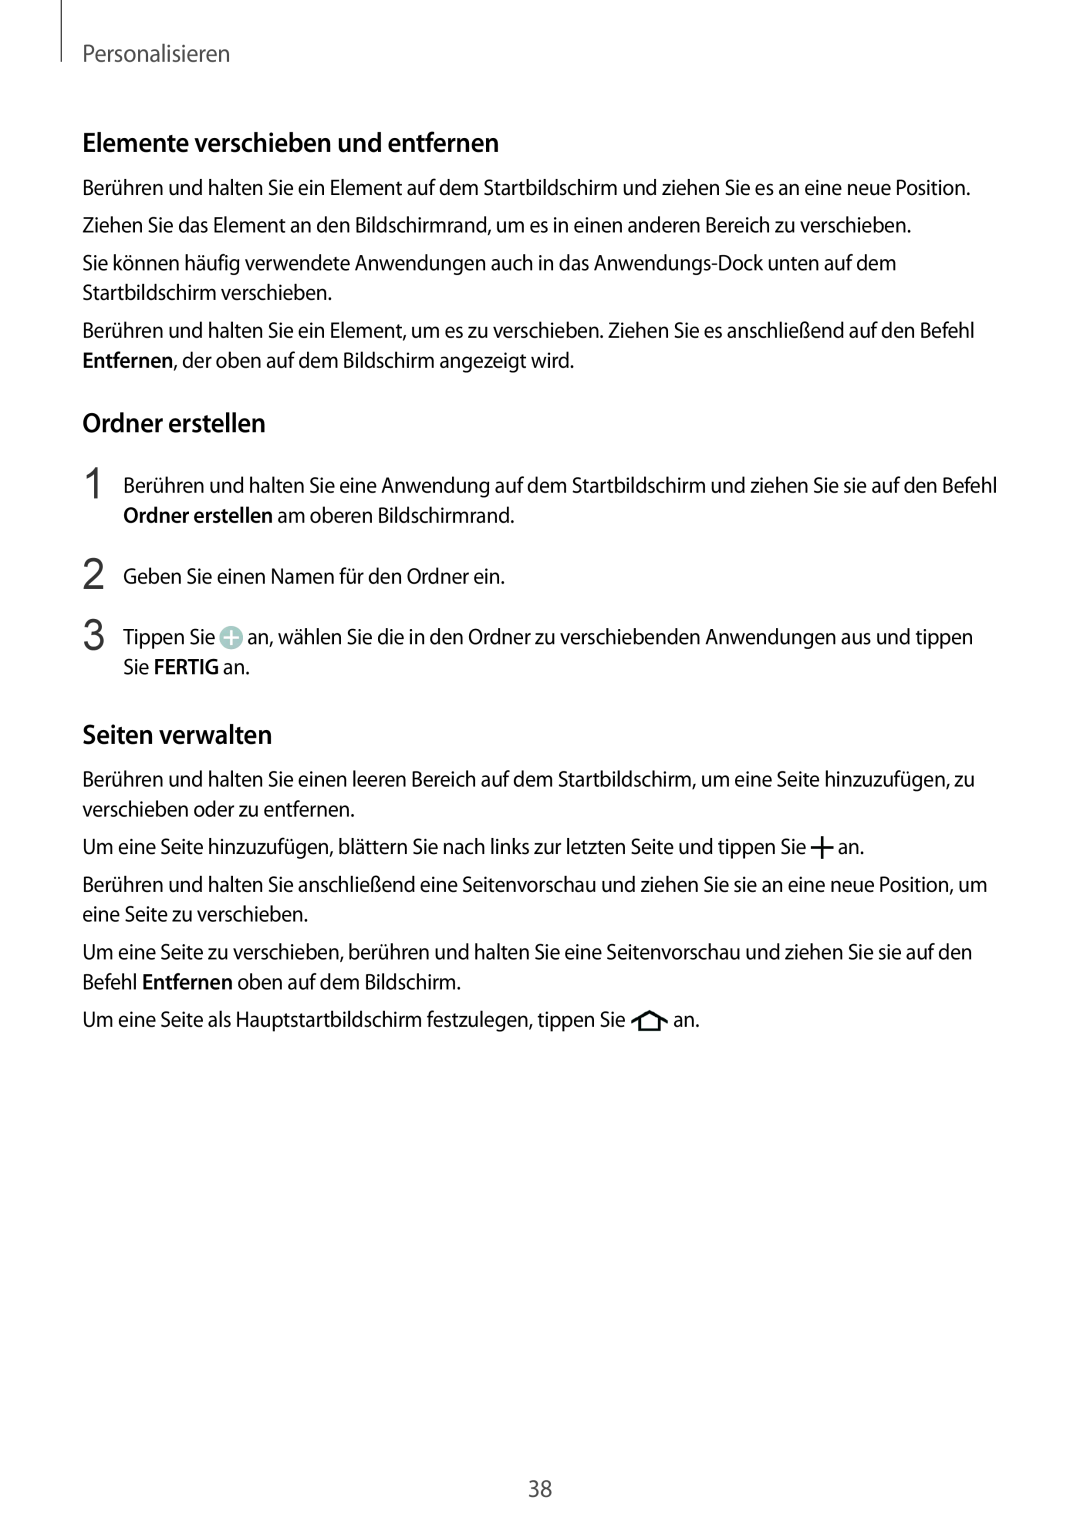 Samsung SM-G901FZKAVGR manual Elemente verschieben und entfernen, Ordner erstellen, Seiten verwalten, Personalisieren 